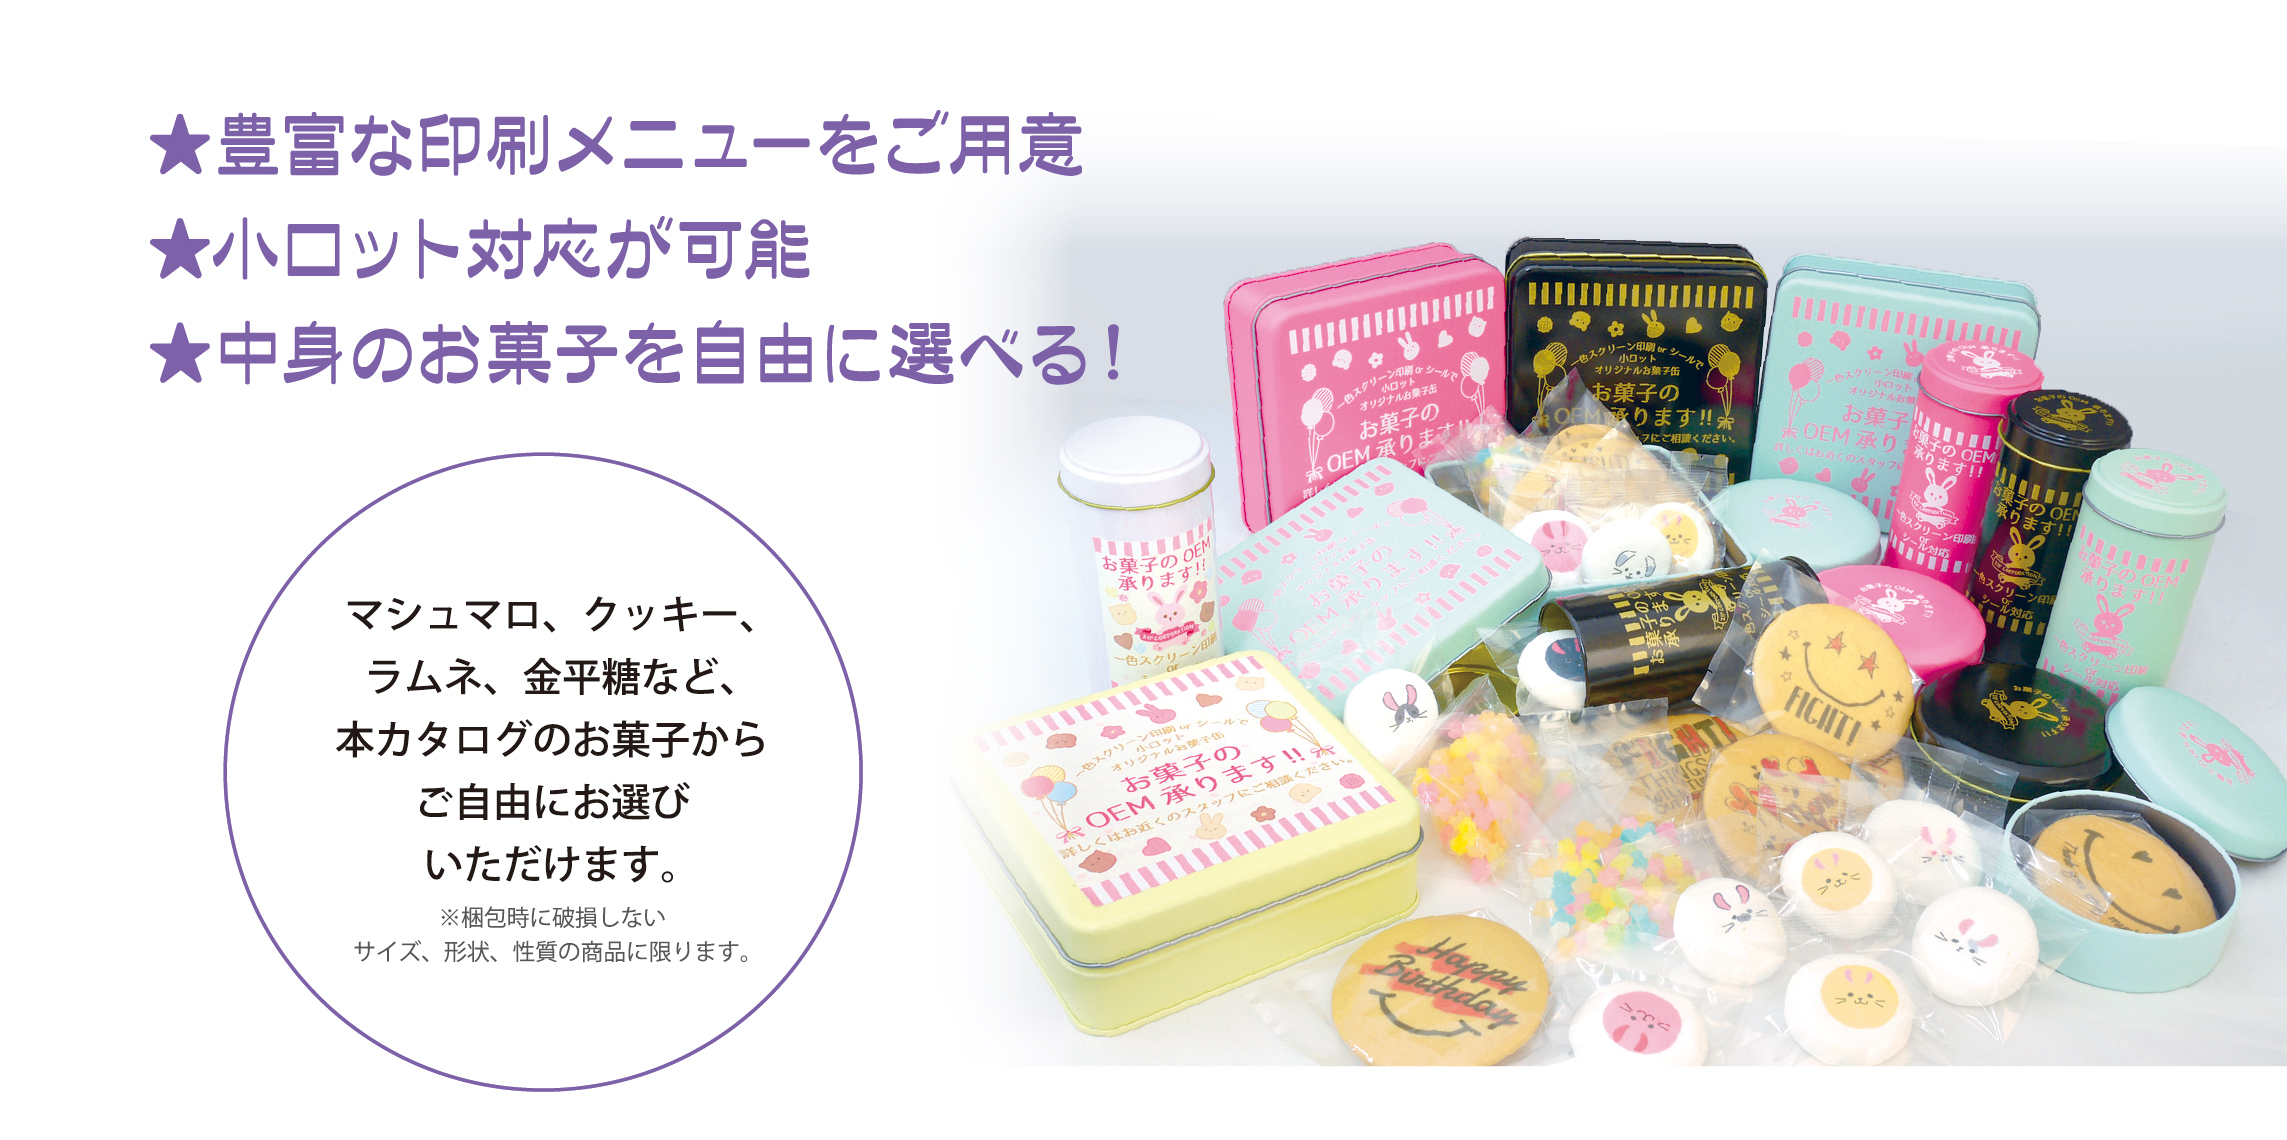 オリジナルお菓子缶 名古屋でお菓子のoem製造 雑貨販売 ジップコーポレーション